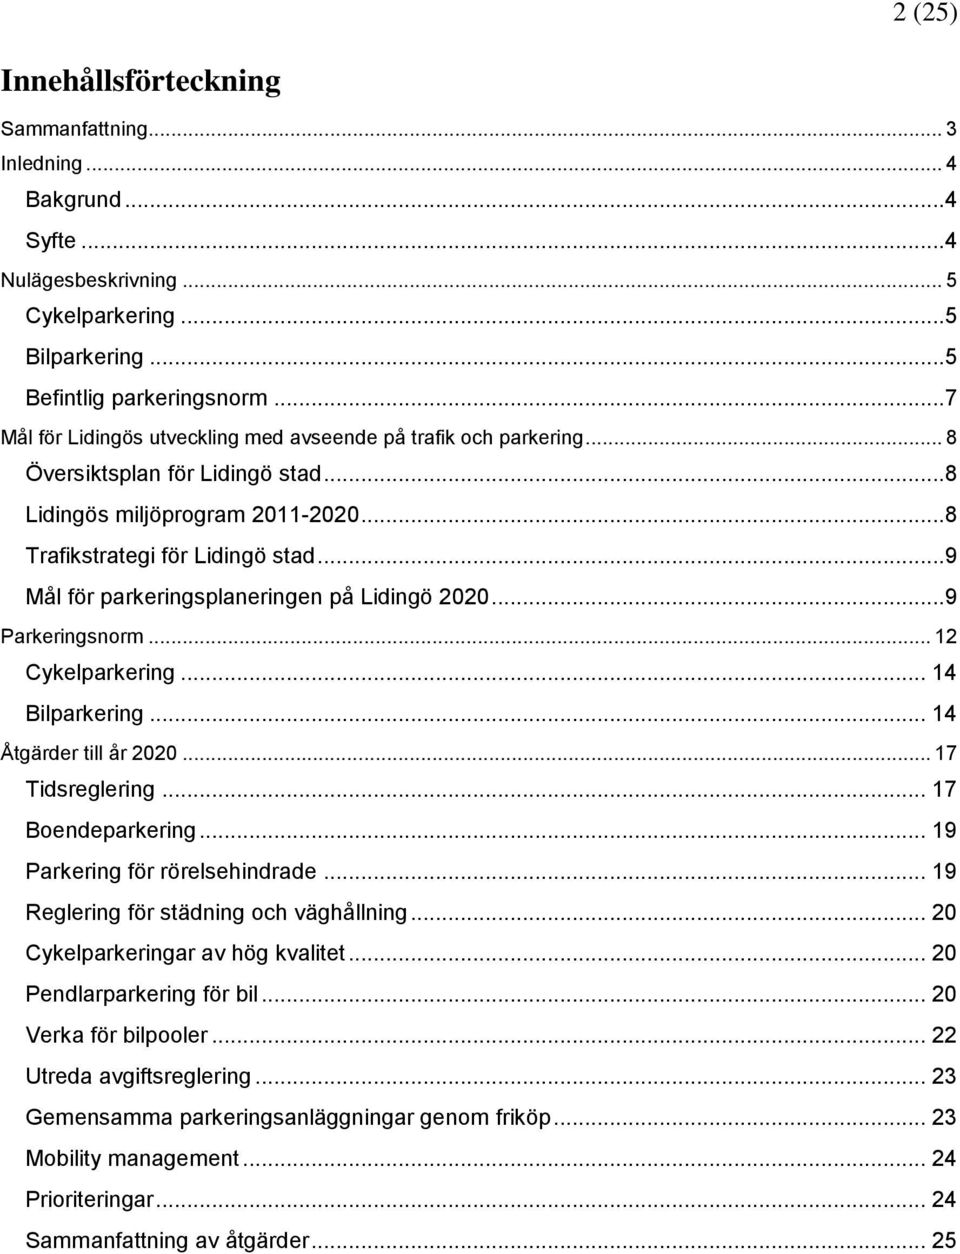 ..9 Mål för parkeringsplaneringen på Lidingö 2020...9 Parkeringsnorm... 12 Cykelparkering... 14 Bilparkering... 14 Åtgärder till år 2020... 17 Tidsreglering... 17 Boendeparkering.